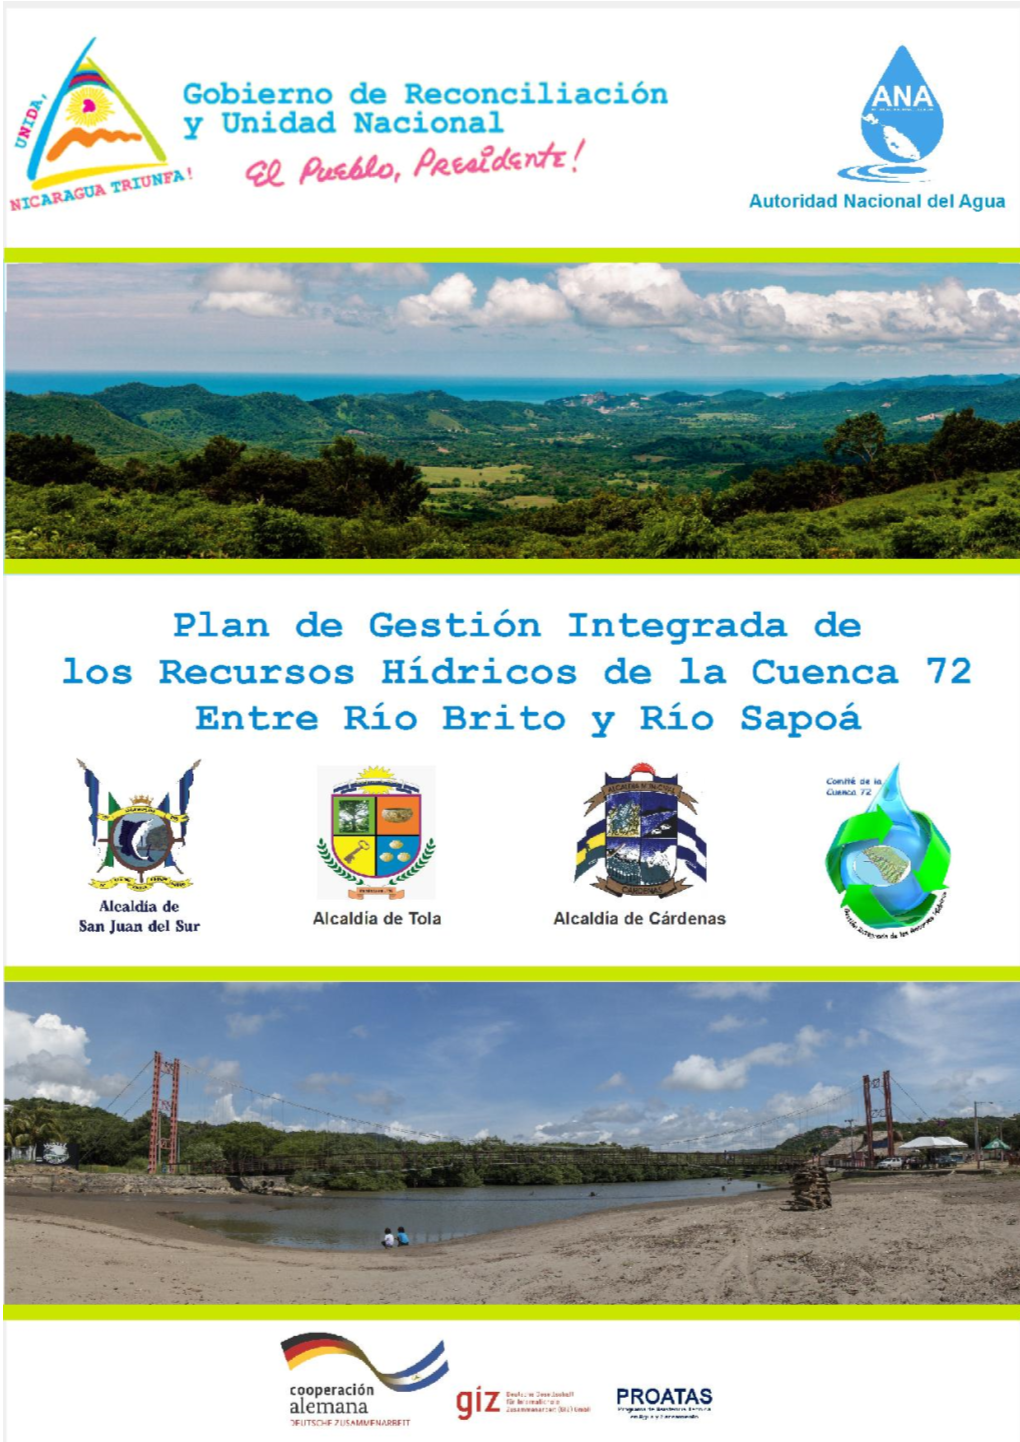 Plan De Gestión Integrada De Recursos Hídricos De La Cuenca 72 El Plan GIRH, Principal Instrumento